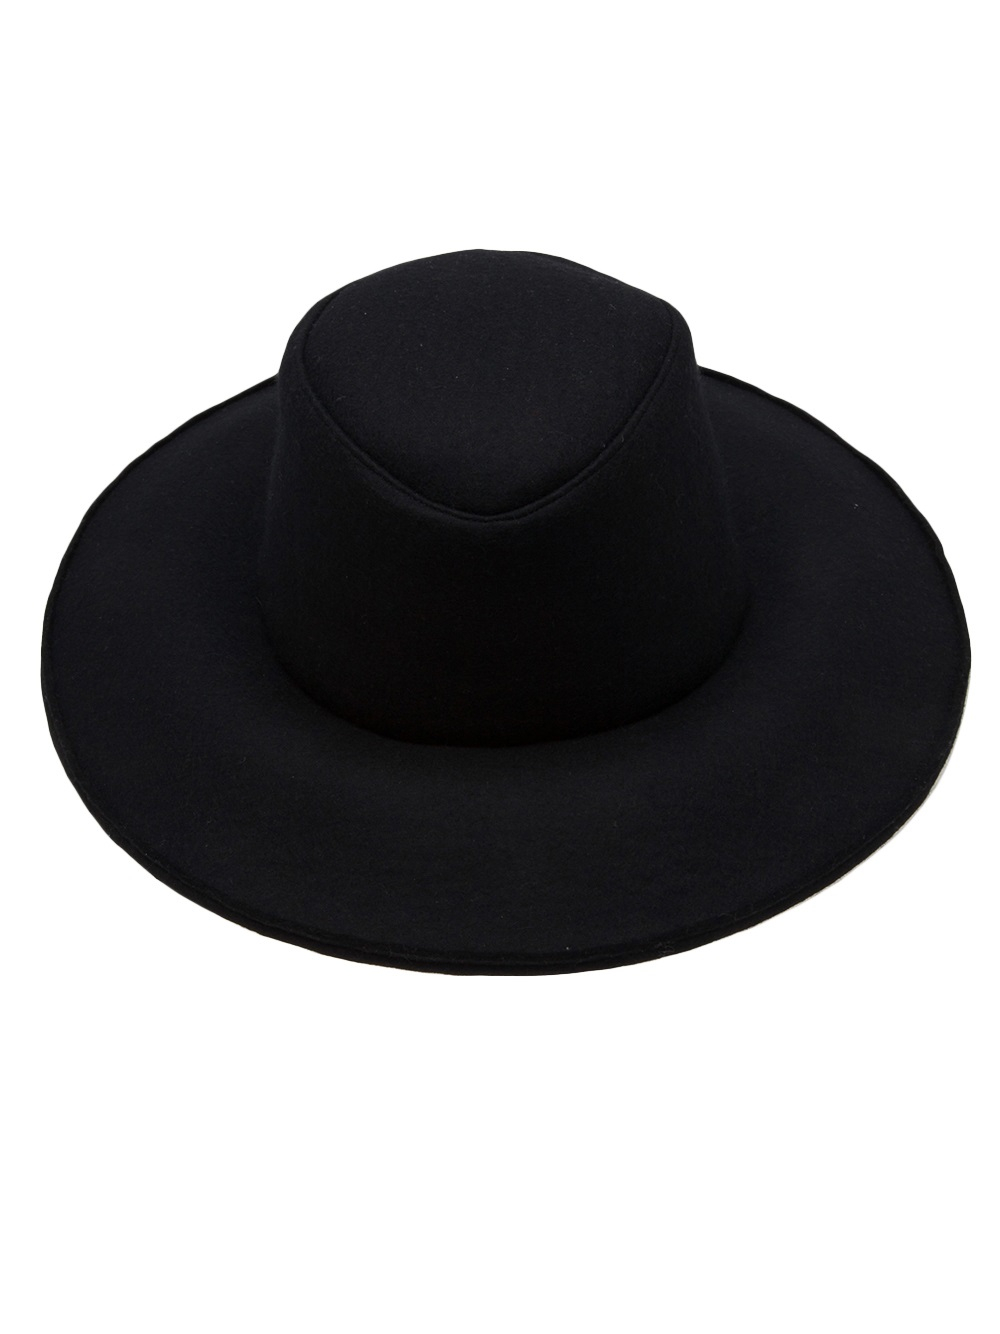 Lyst - Junya watanabe Round Top Hat in Black